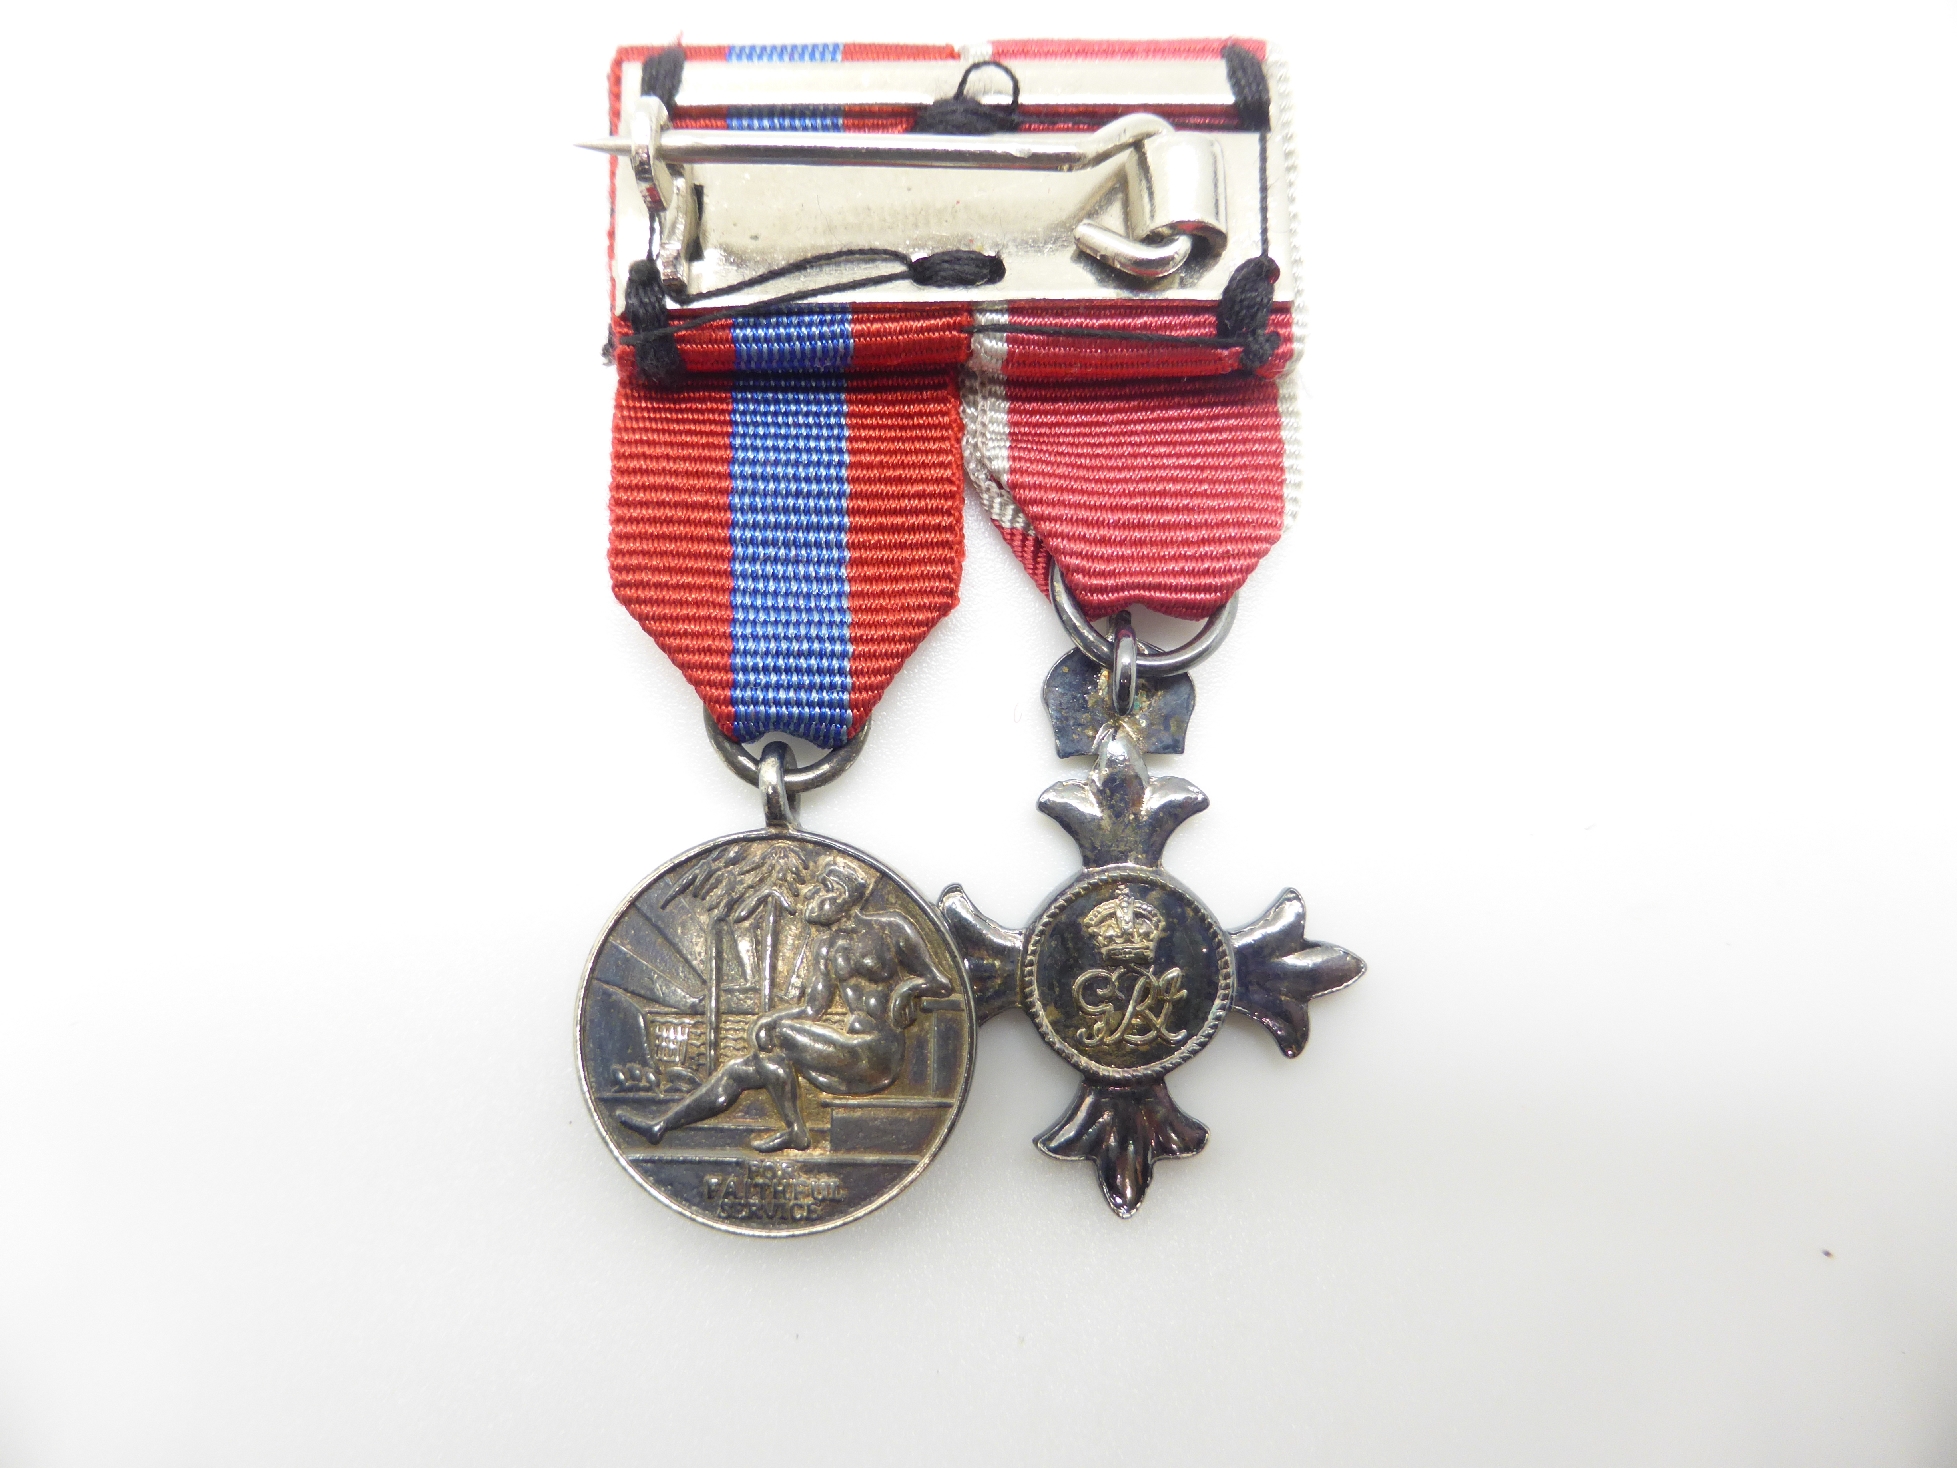 Elizabeth II Imperial Service Medal named to Mrs Jean Margaret Rose together with a WWII War Medal - Image 35 of 47